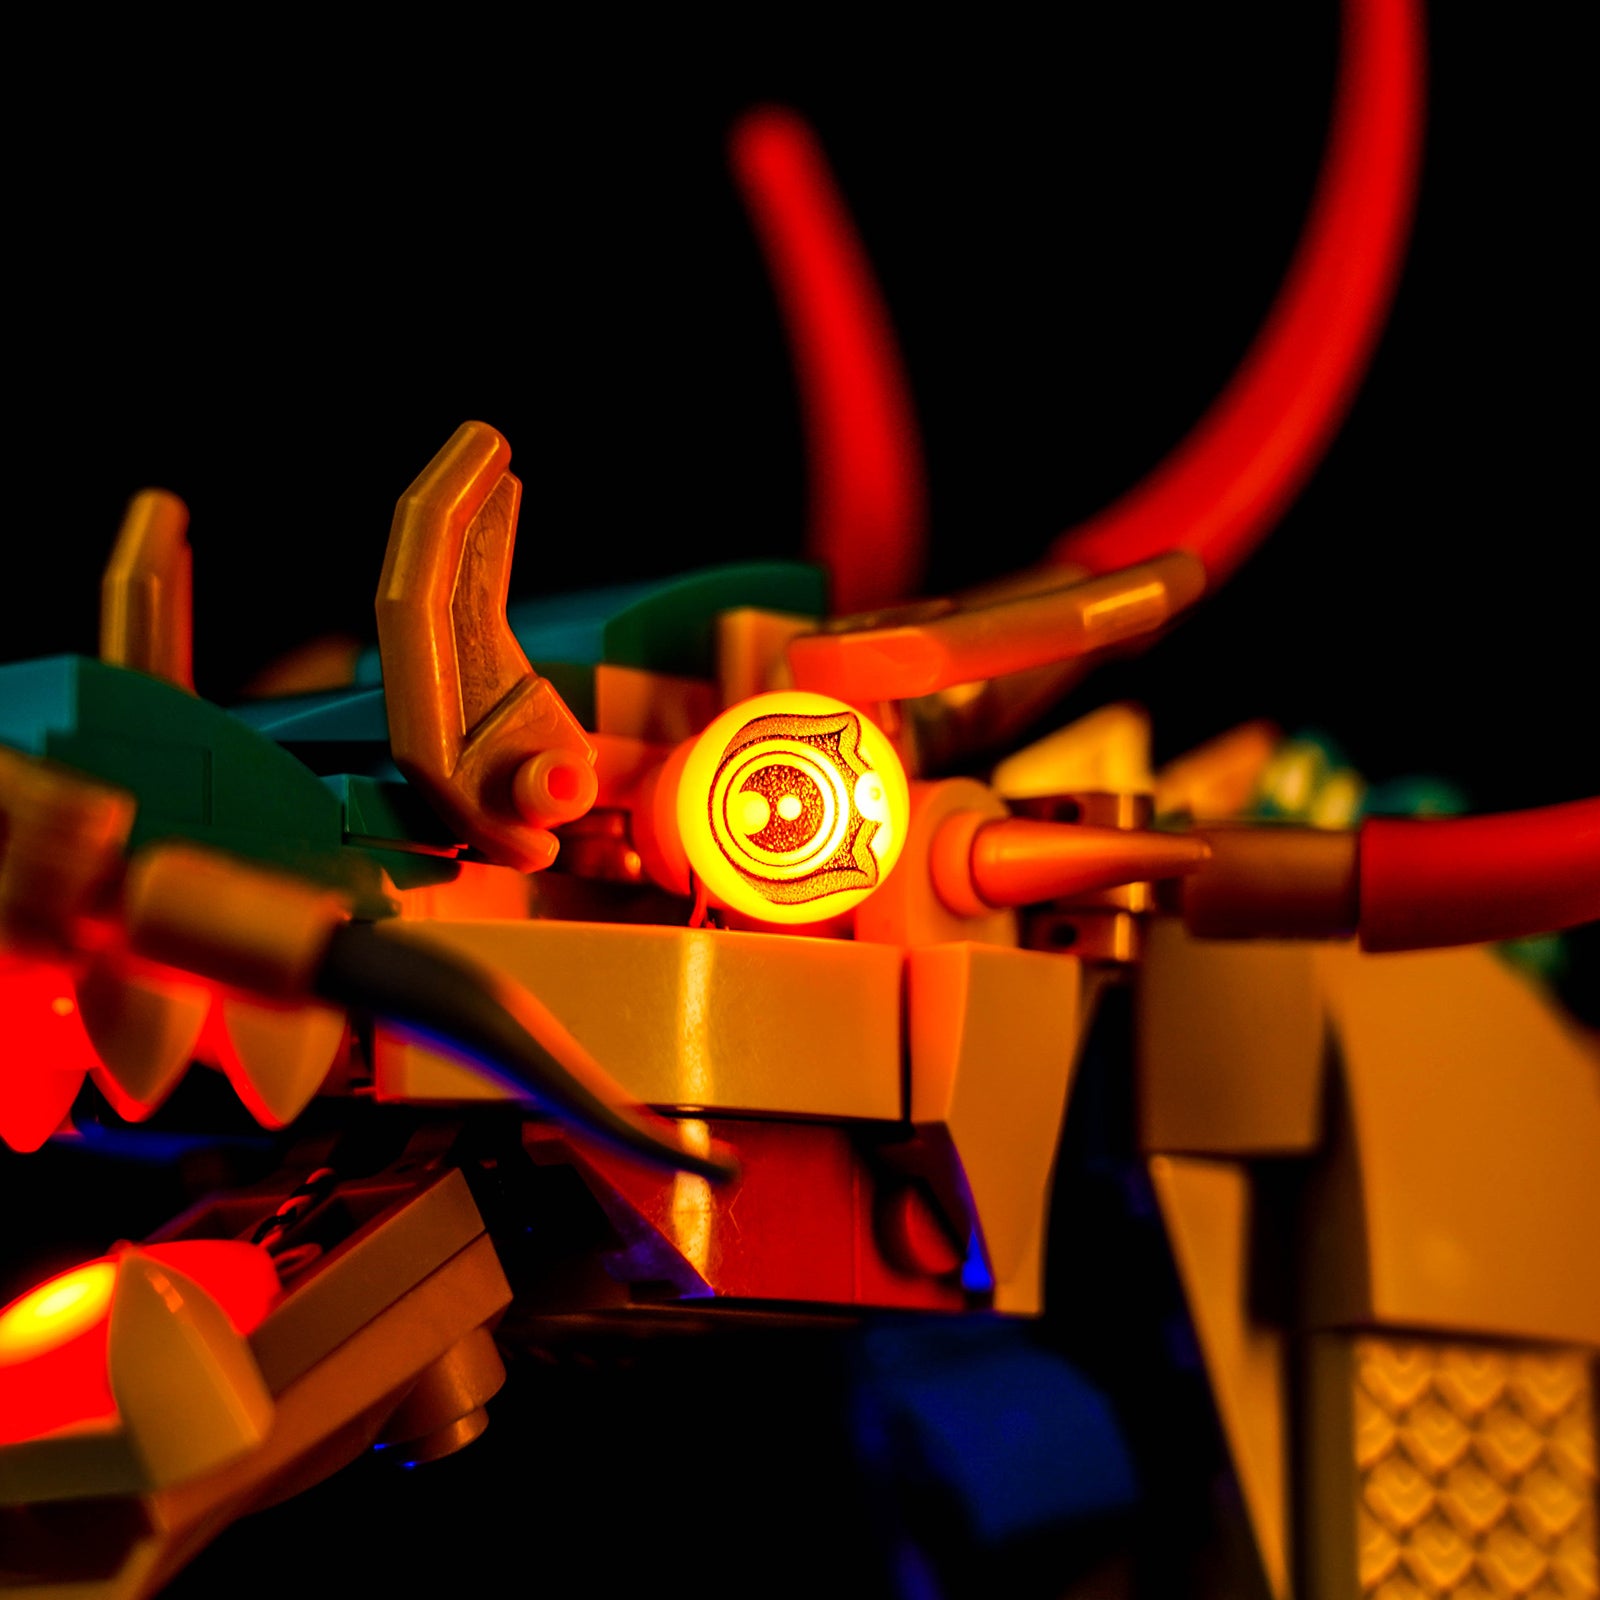 BrickBling Lichtset für LEGO Auspicious Dragon 80112